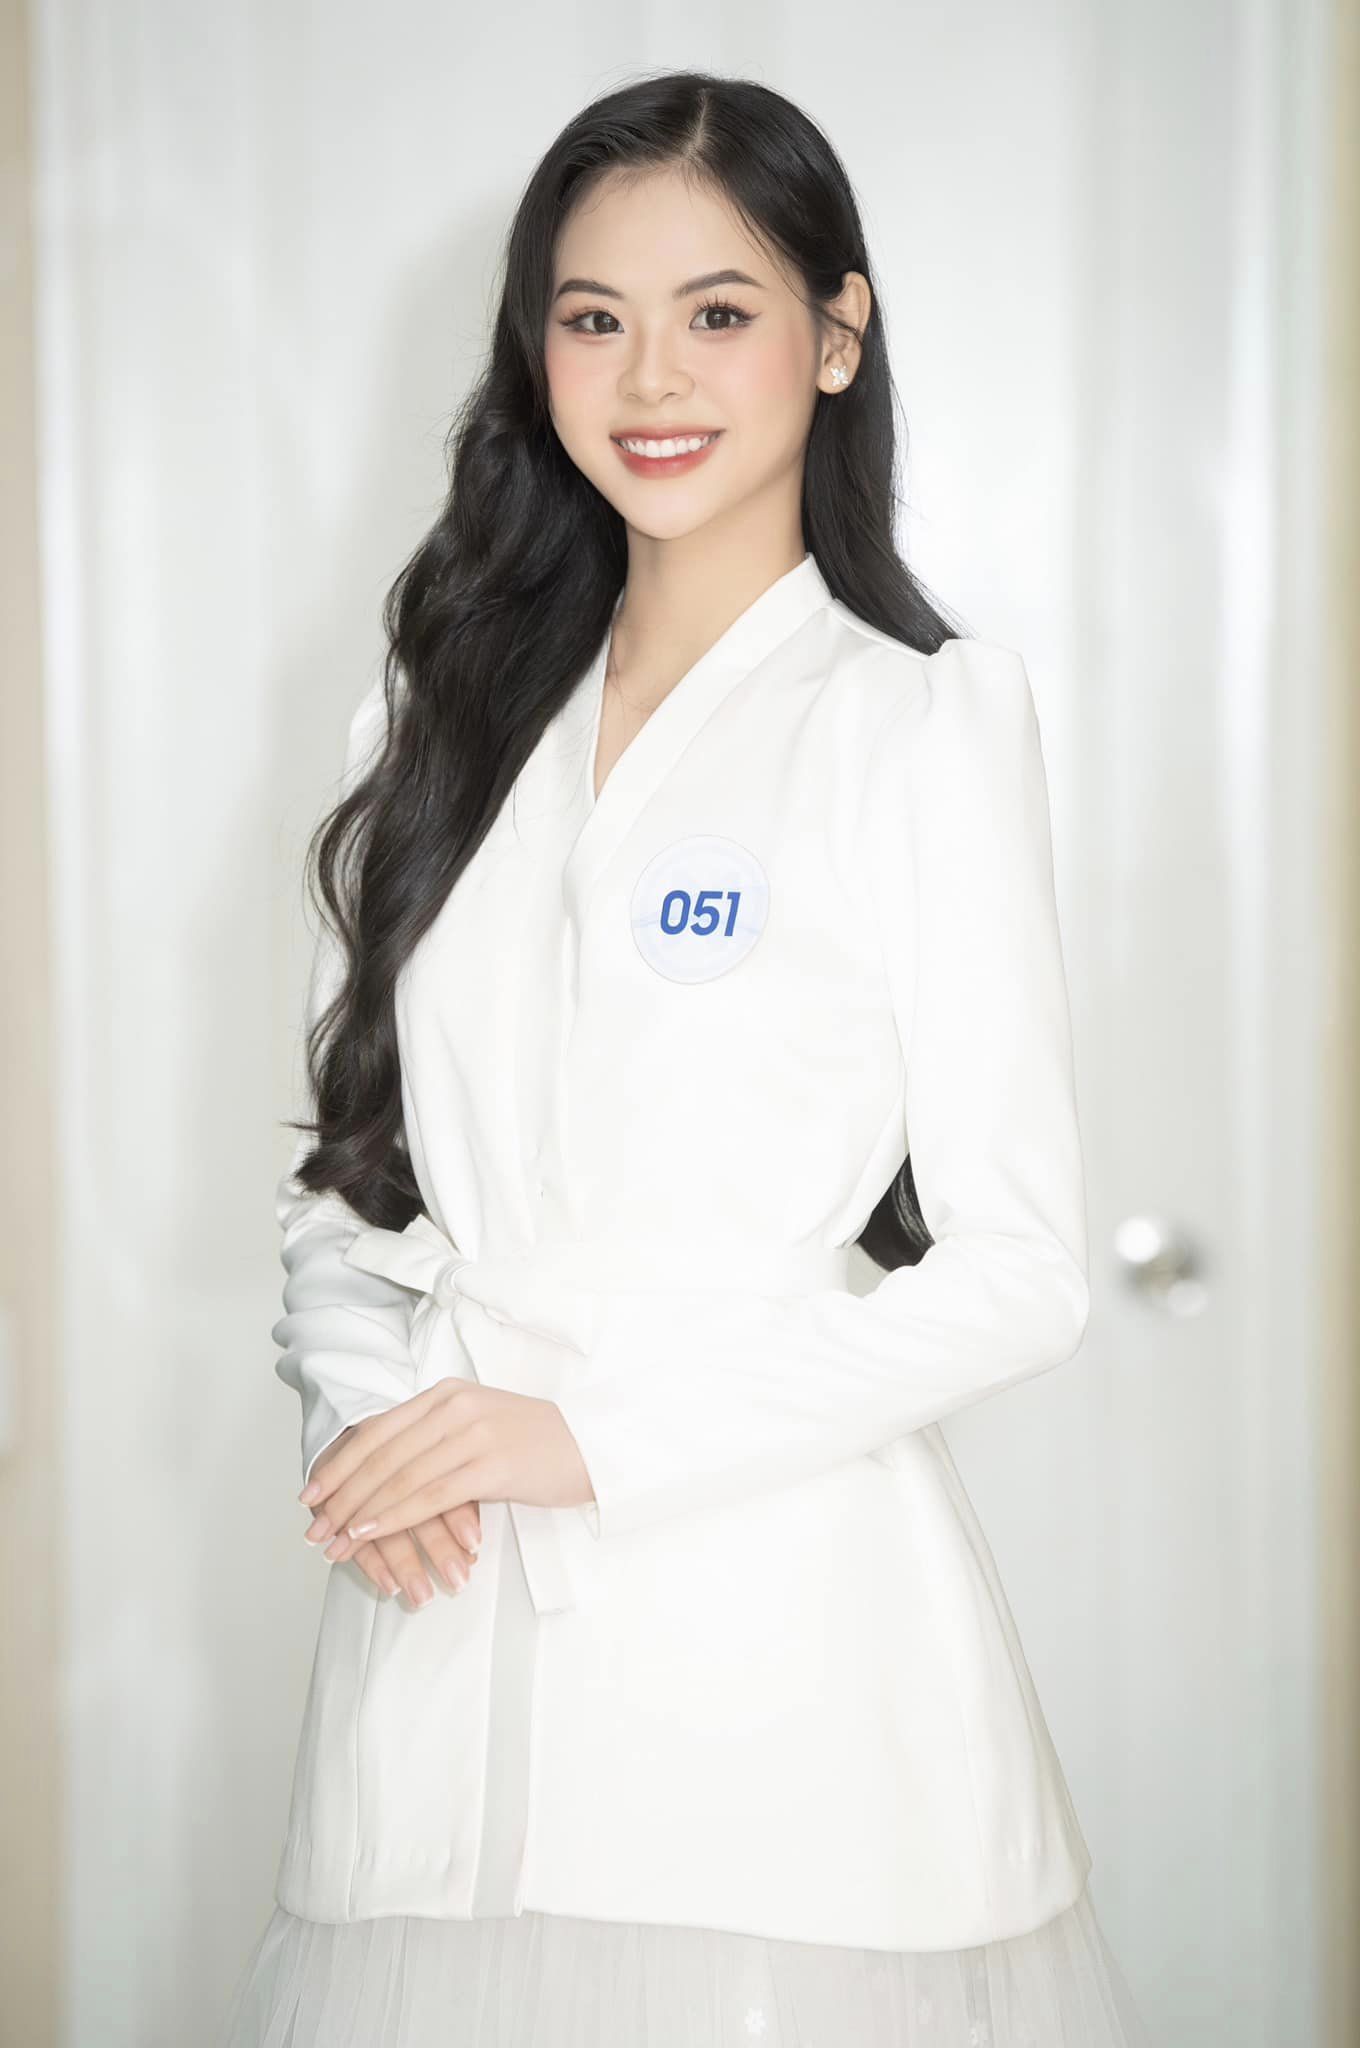 Điều ít biết của Hoa khôi bóng chuyền vào thẳng chung kết Miss World Vietnam 2022: Bố sửa xe máy, không mang túi xách - Ảnh 1.